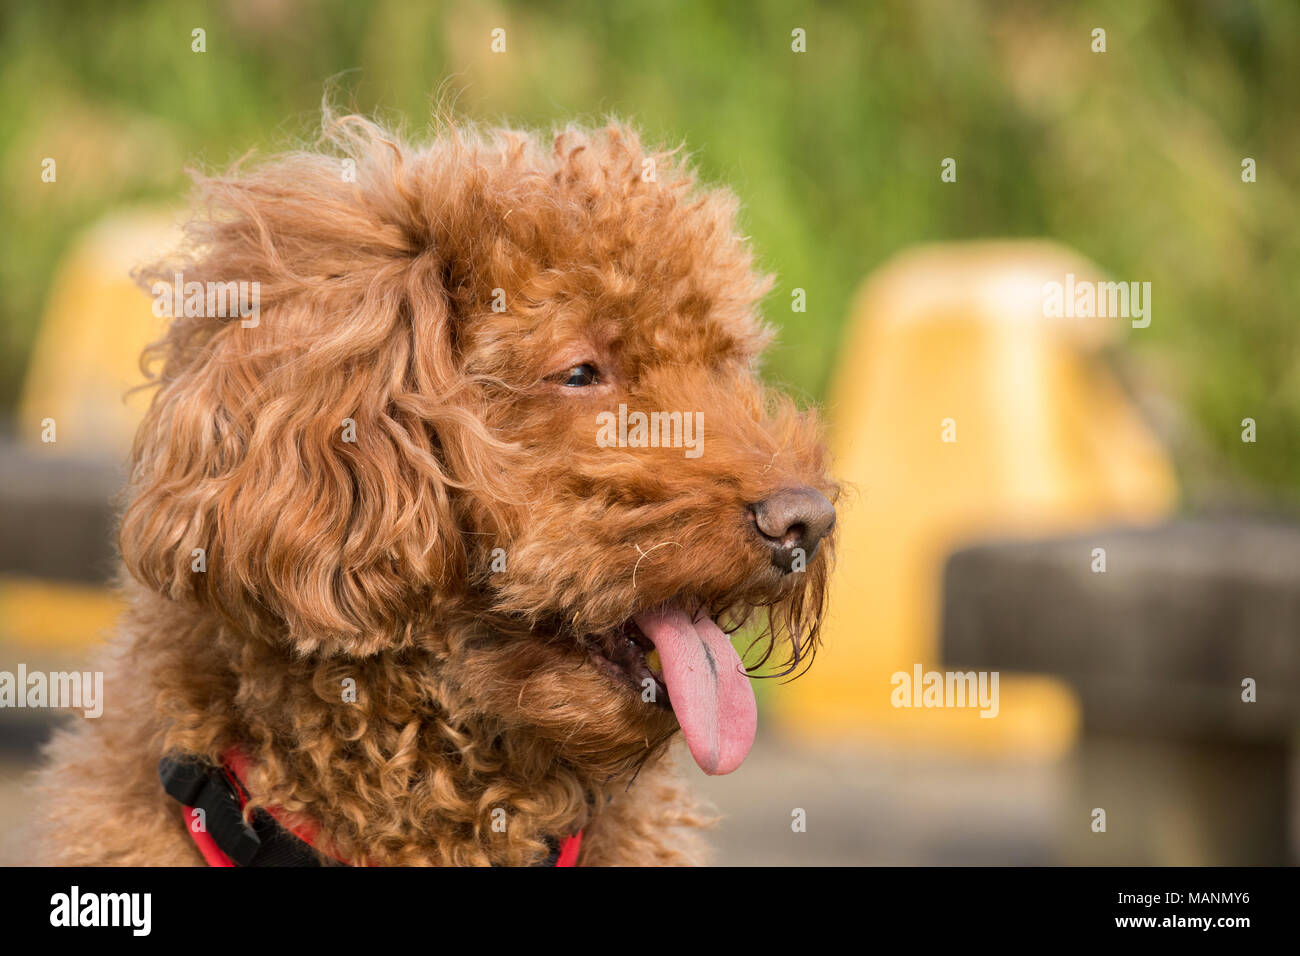 Ritratto di cioccolato-poodle con linguetta appendere fuori, sfondo al di fuori della messa a fuoco Foto Stock